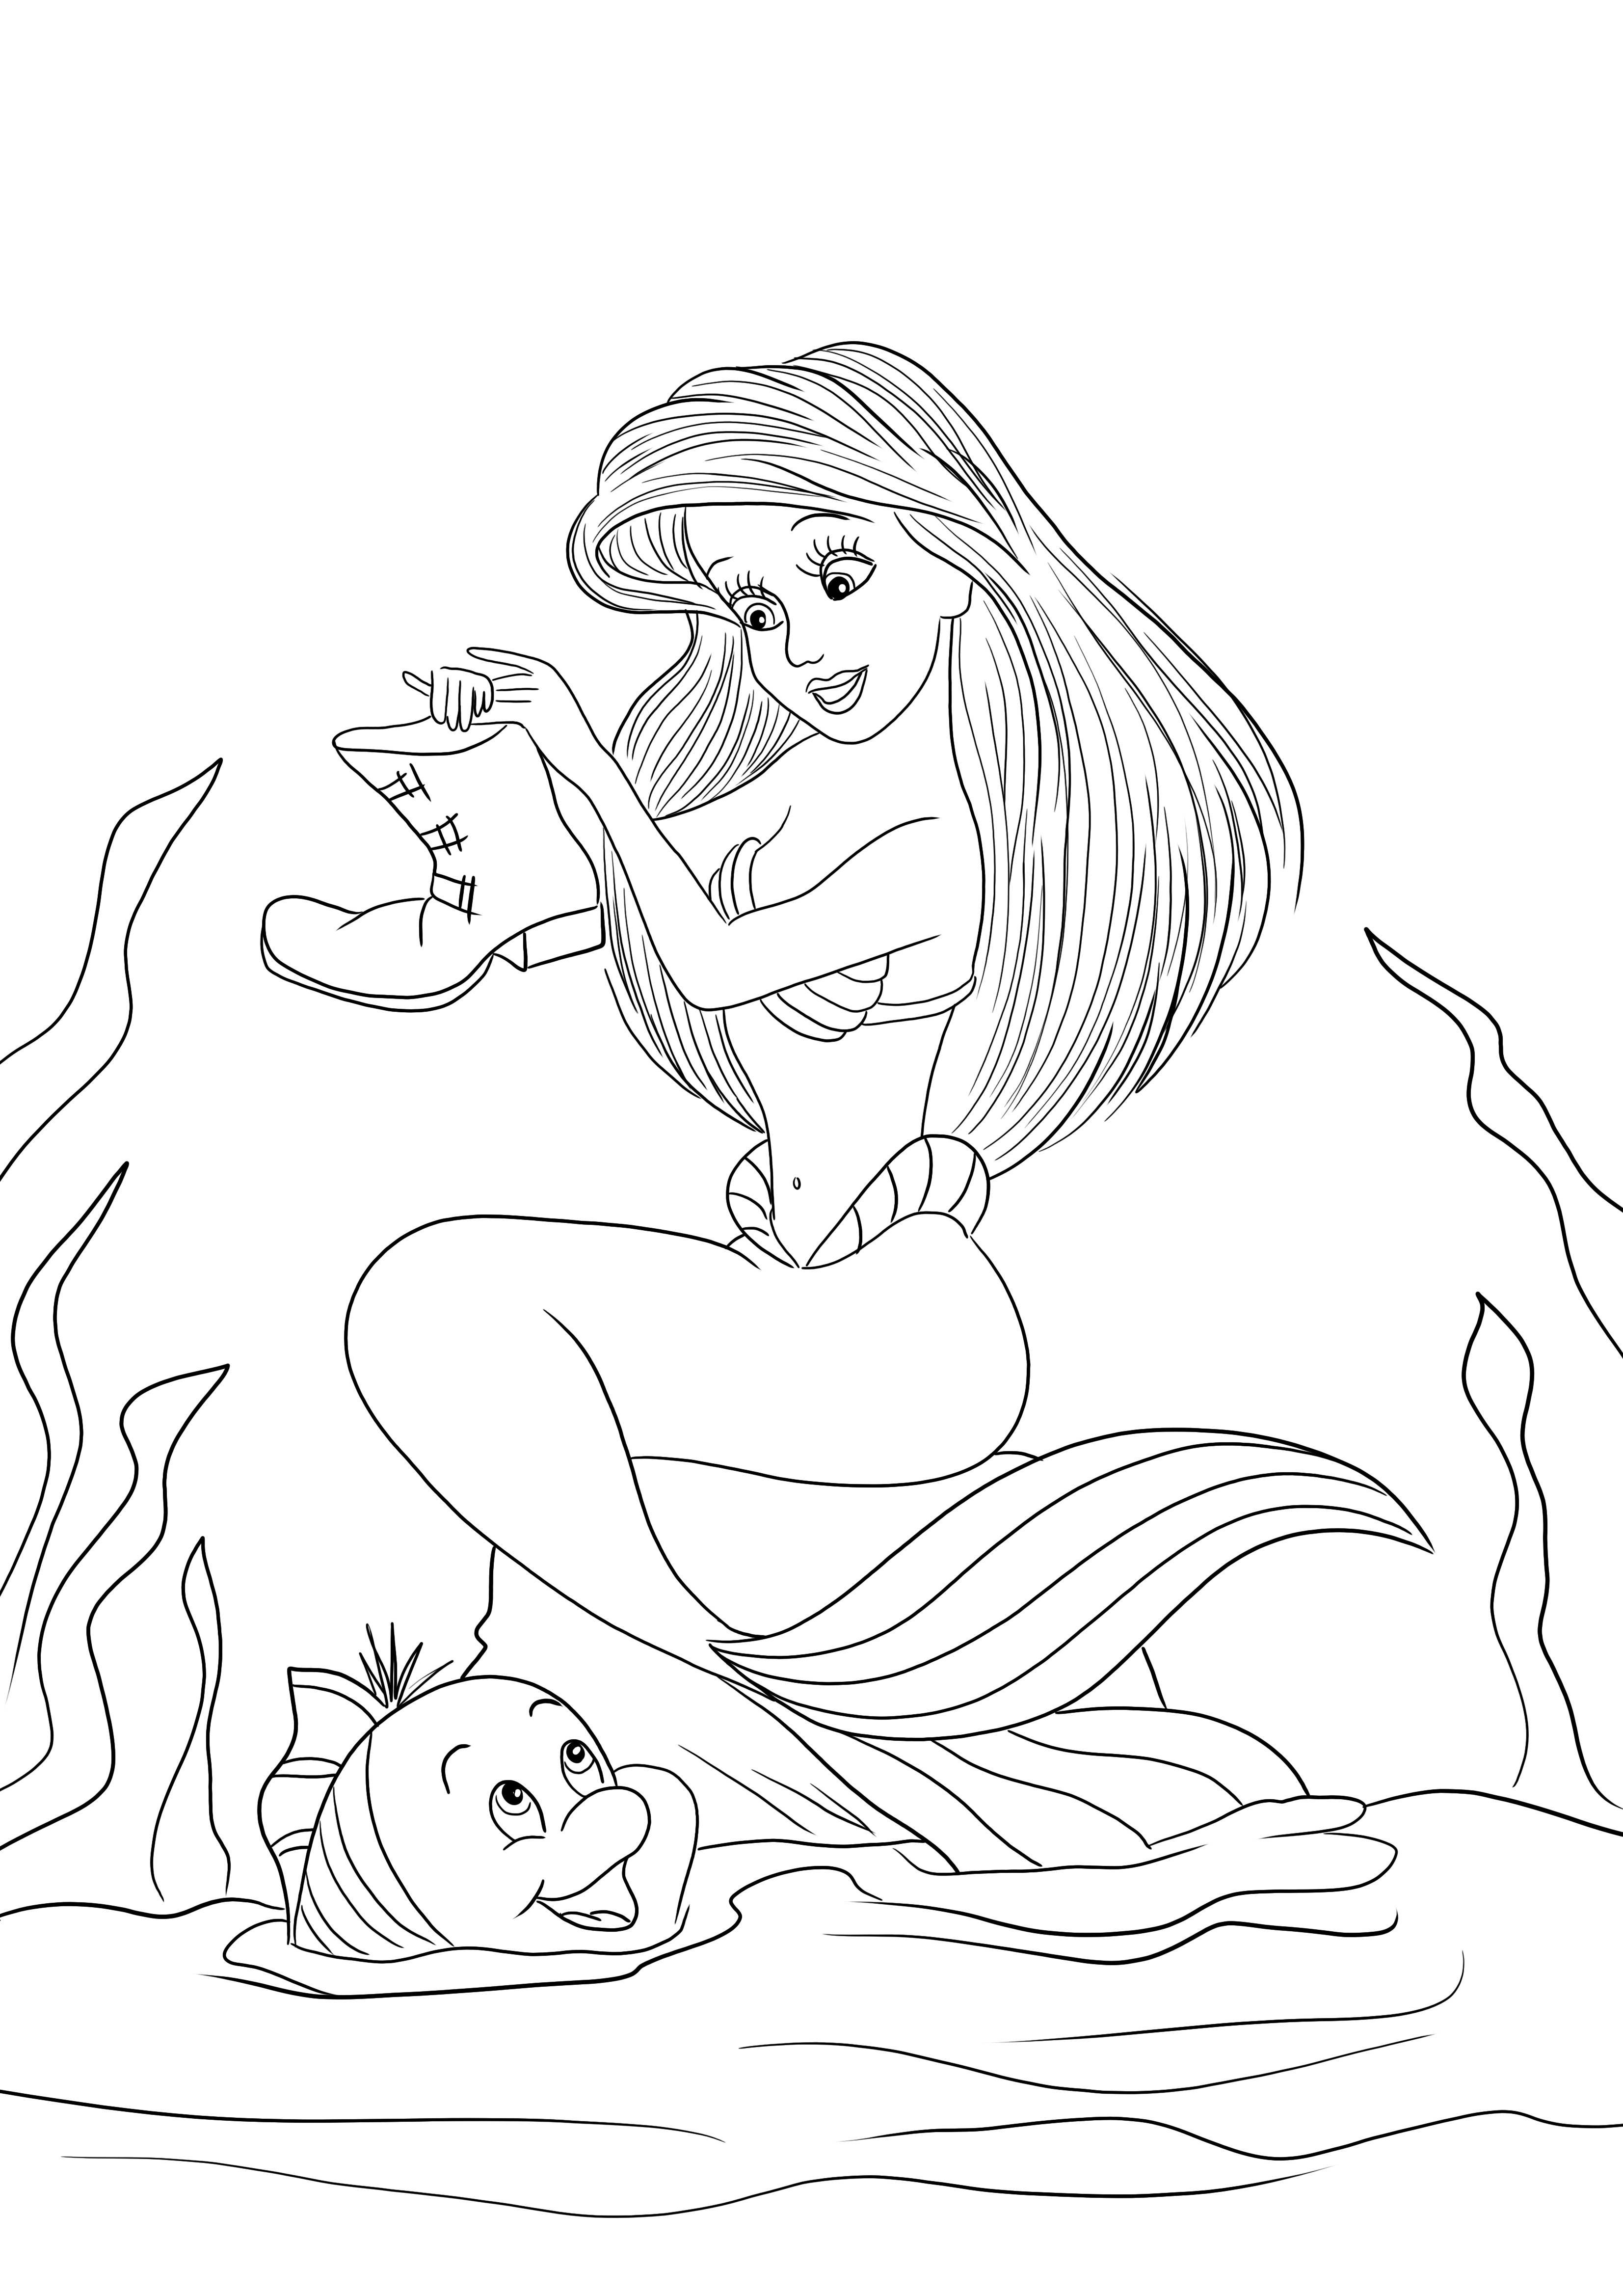 Ariel e Linguado colorindo e baixando imagem para todas as idades